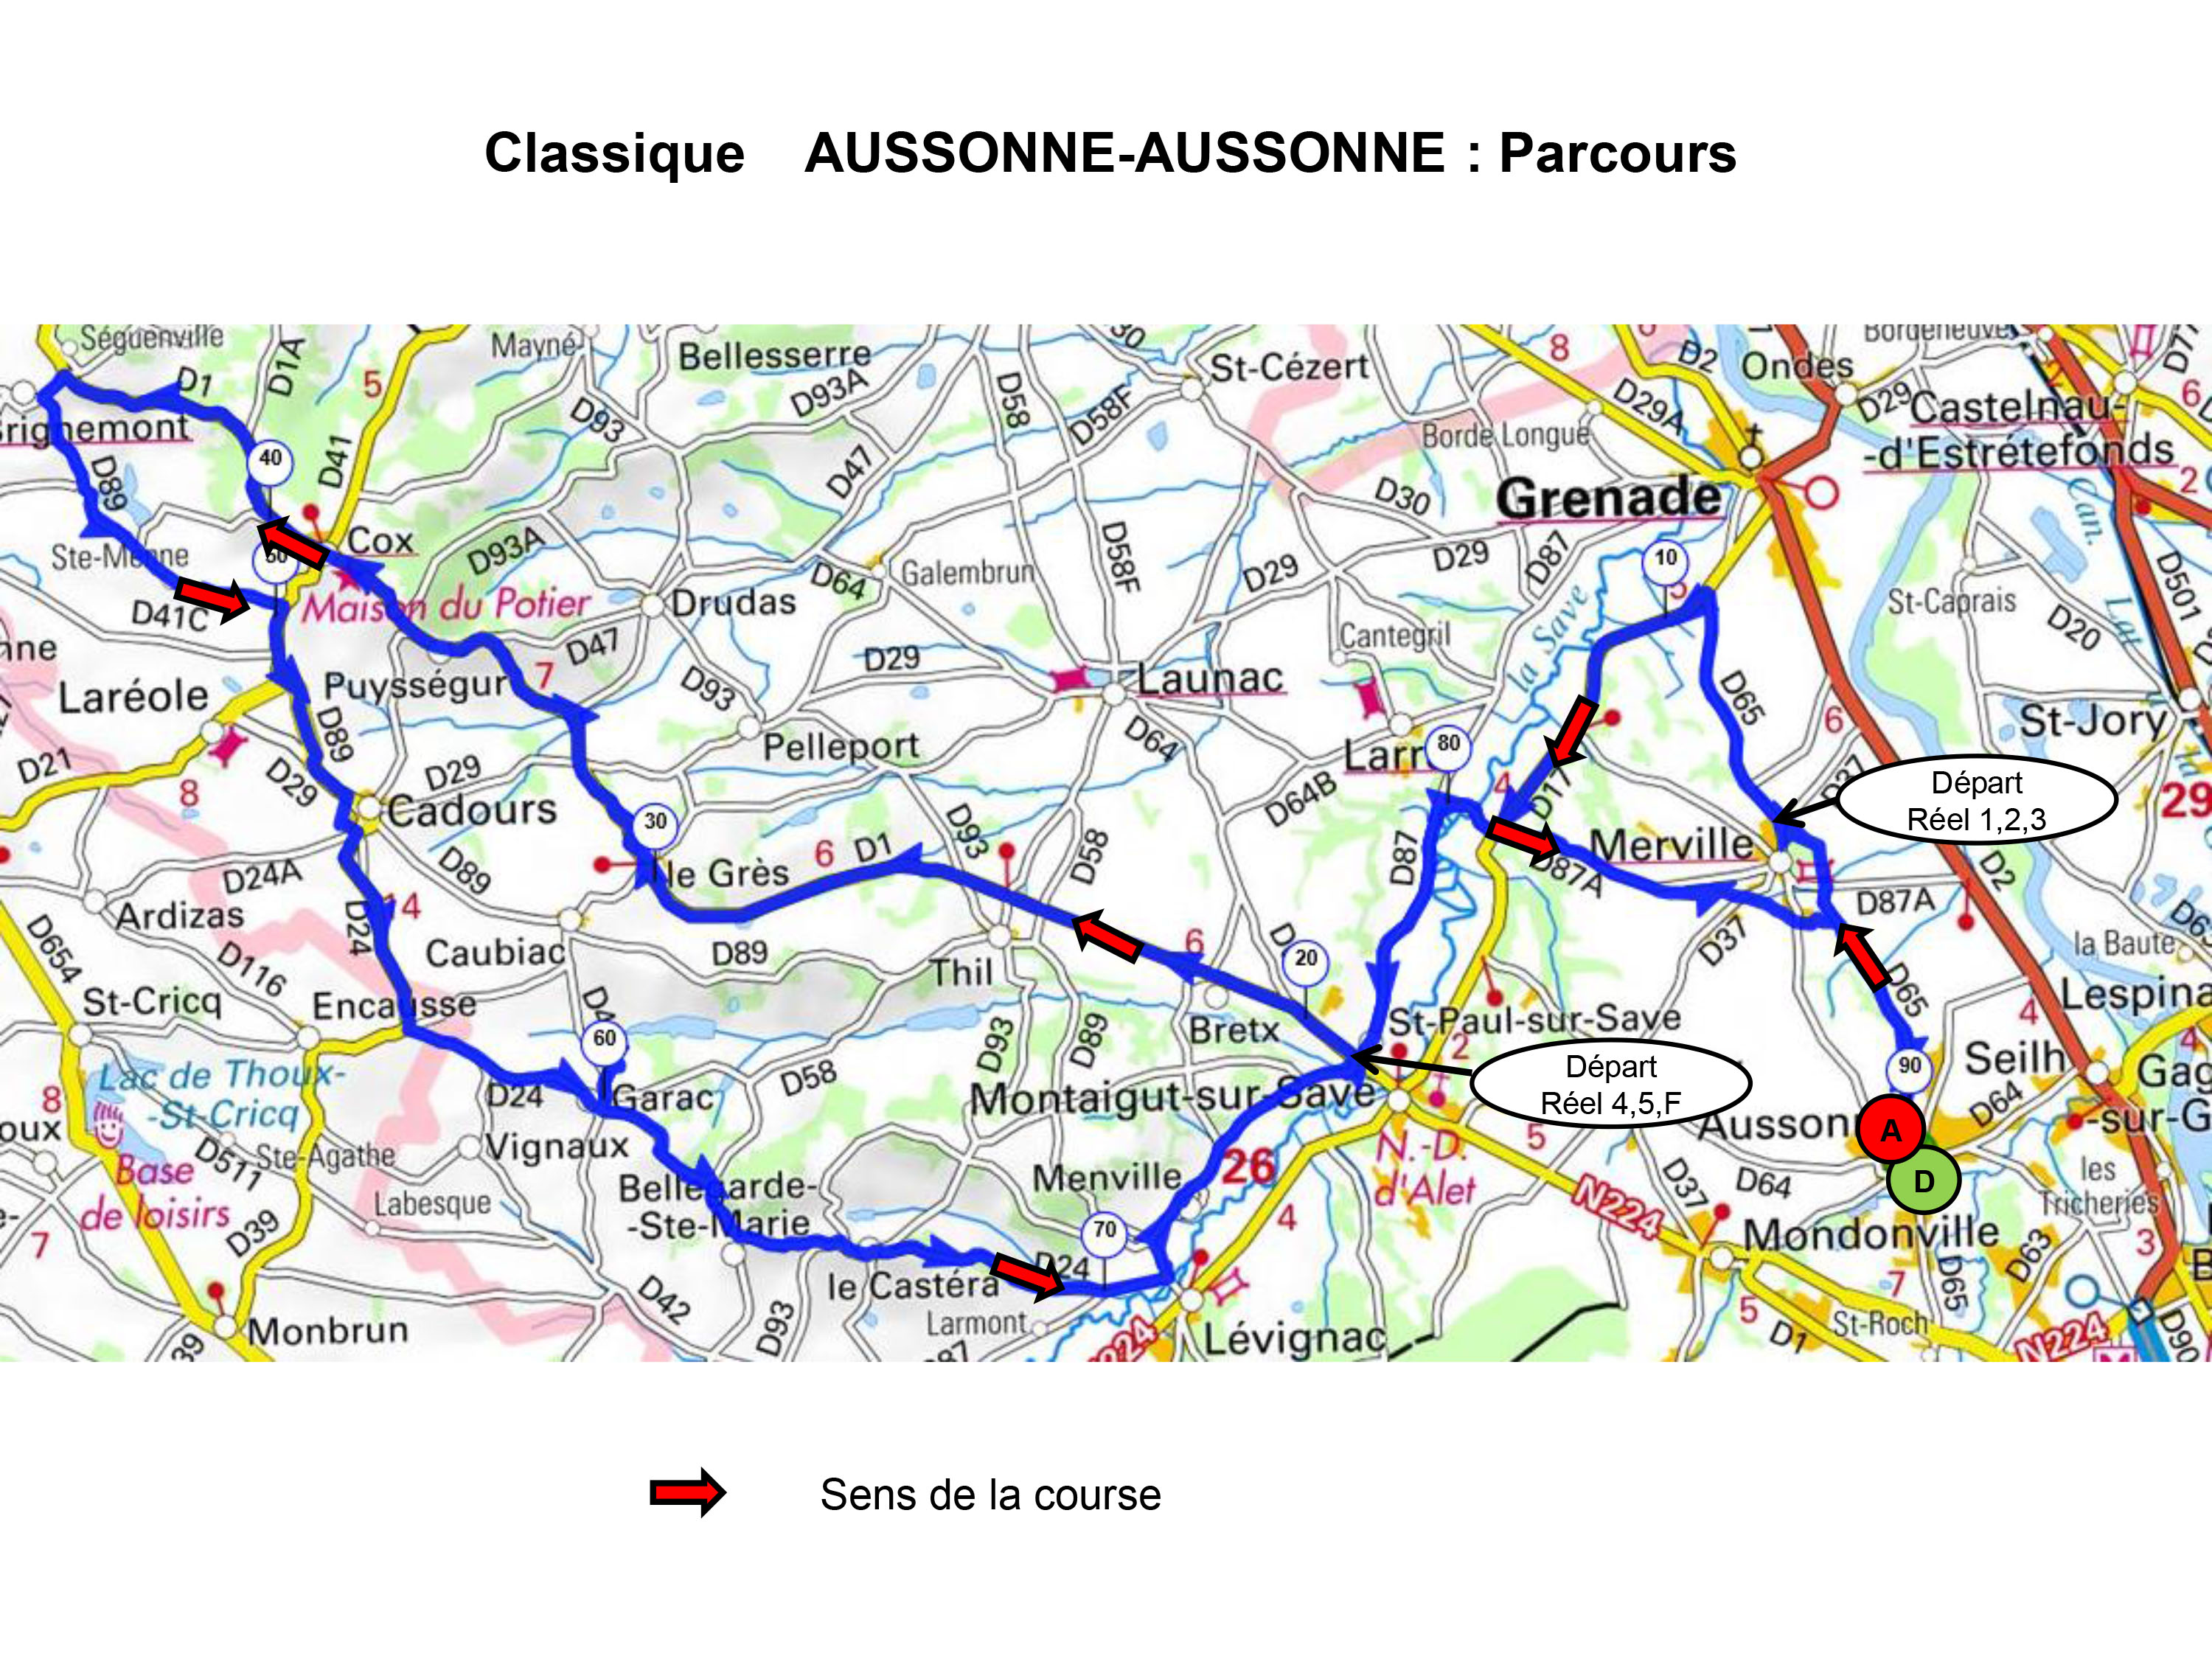 Aussonne Aussonne Parcours 2019 PDF